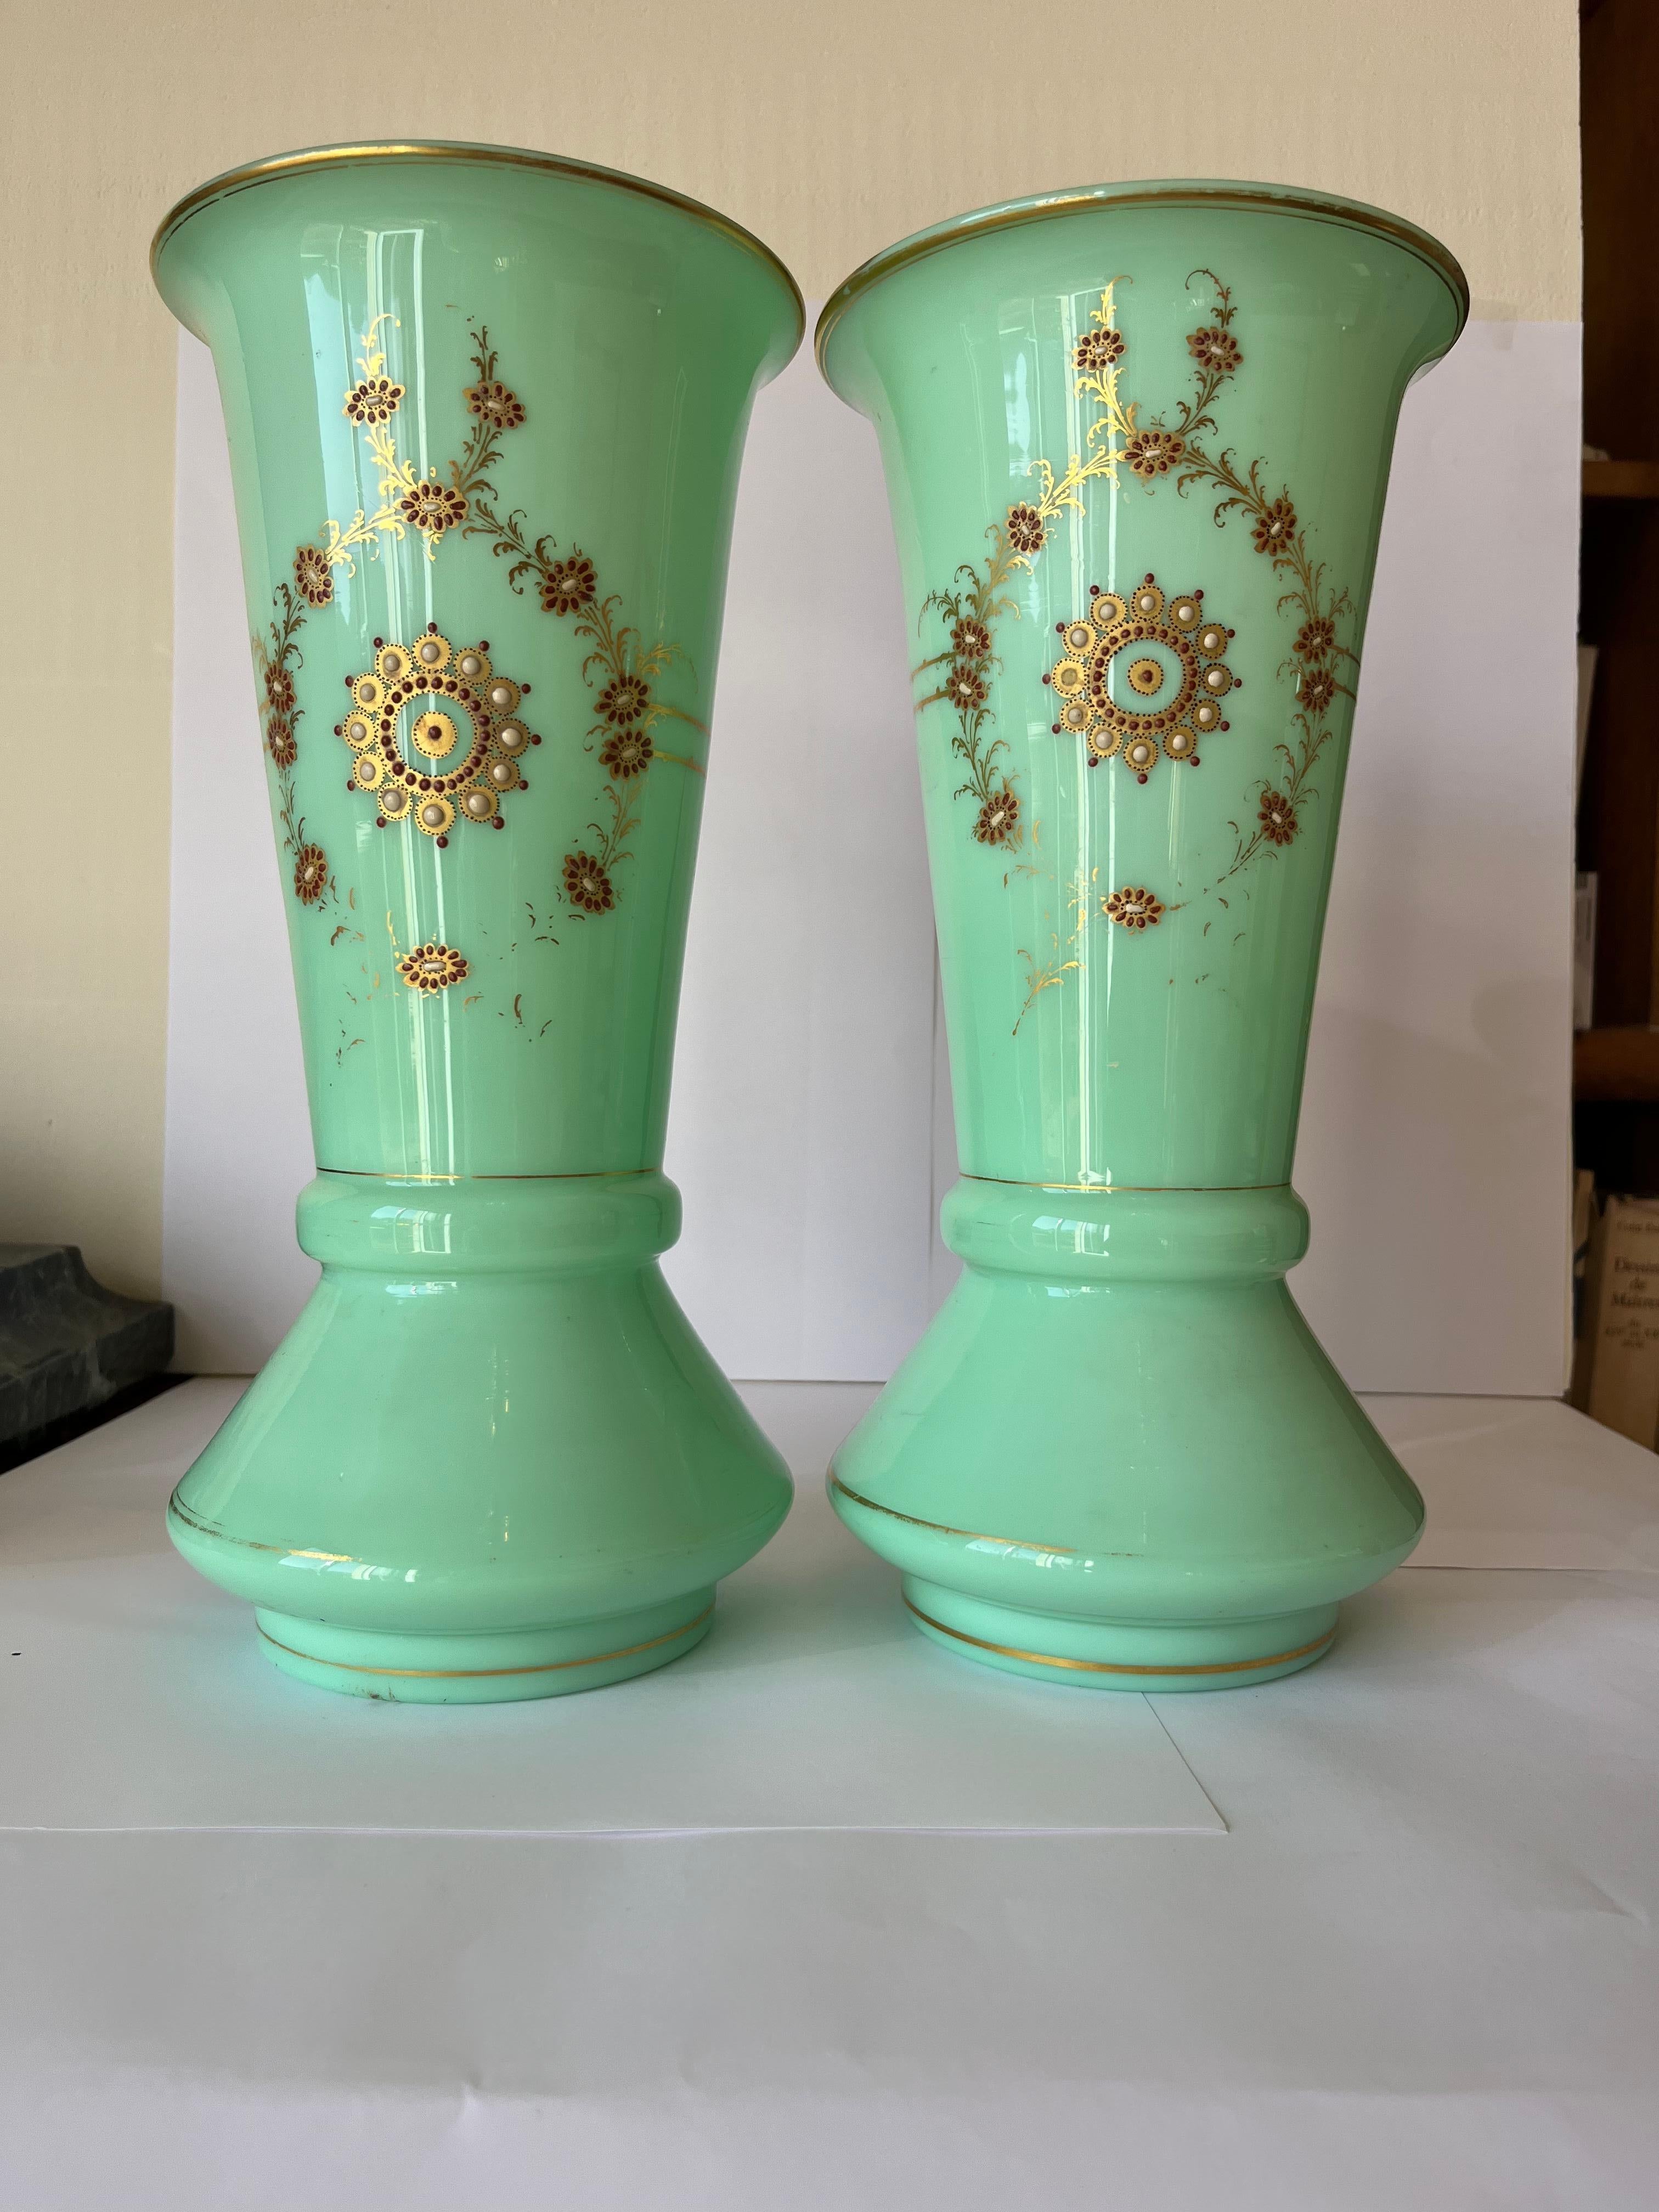 Paire de vases Louis Phillipe opalins vert d'eau .
La couleur est si intéressante et la taille aussi, la forme élégante et les objets décoratifs raffinés.
Peut être ajusté et assorti à la couleur des rideaux ou des sièges dans un salon.